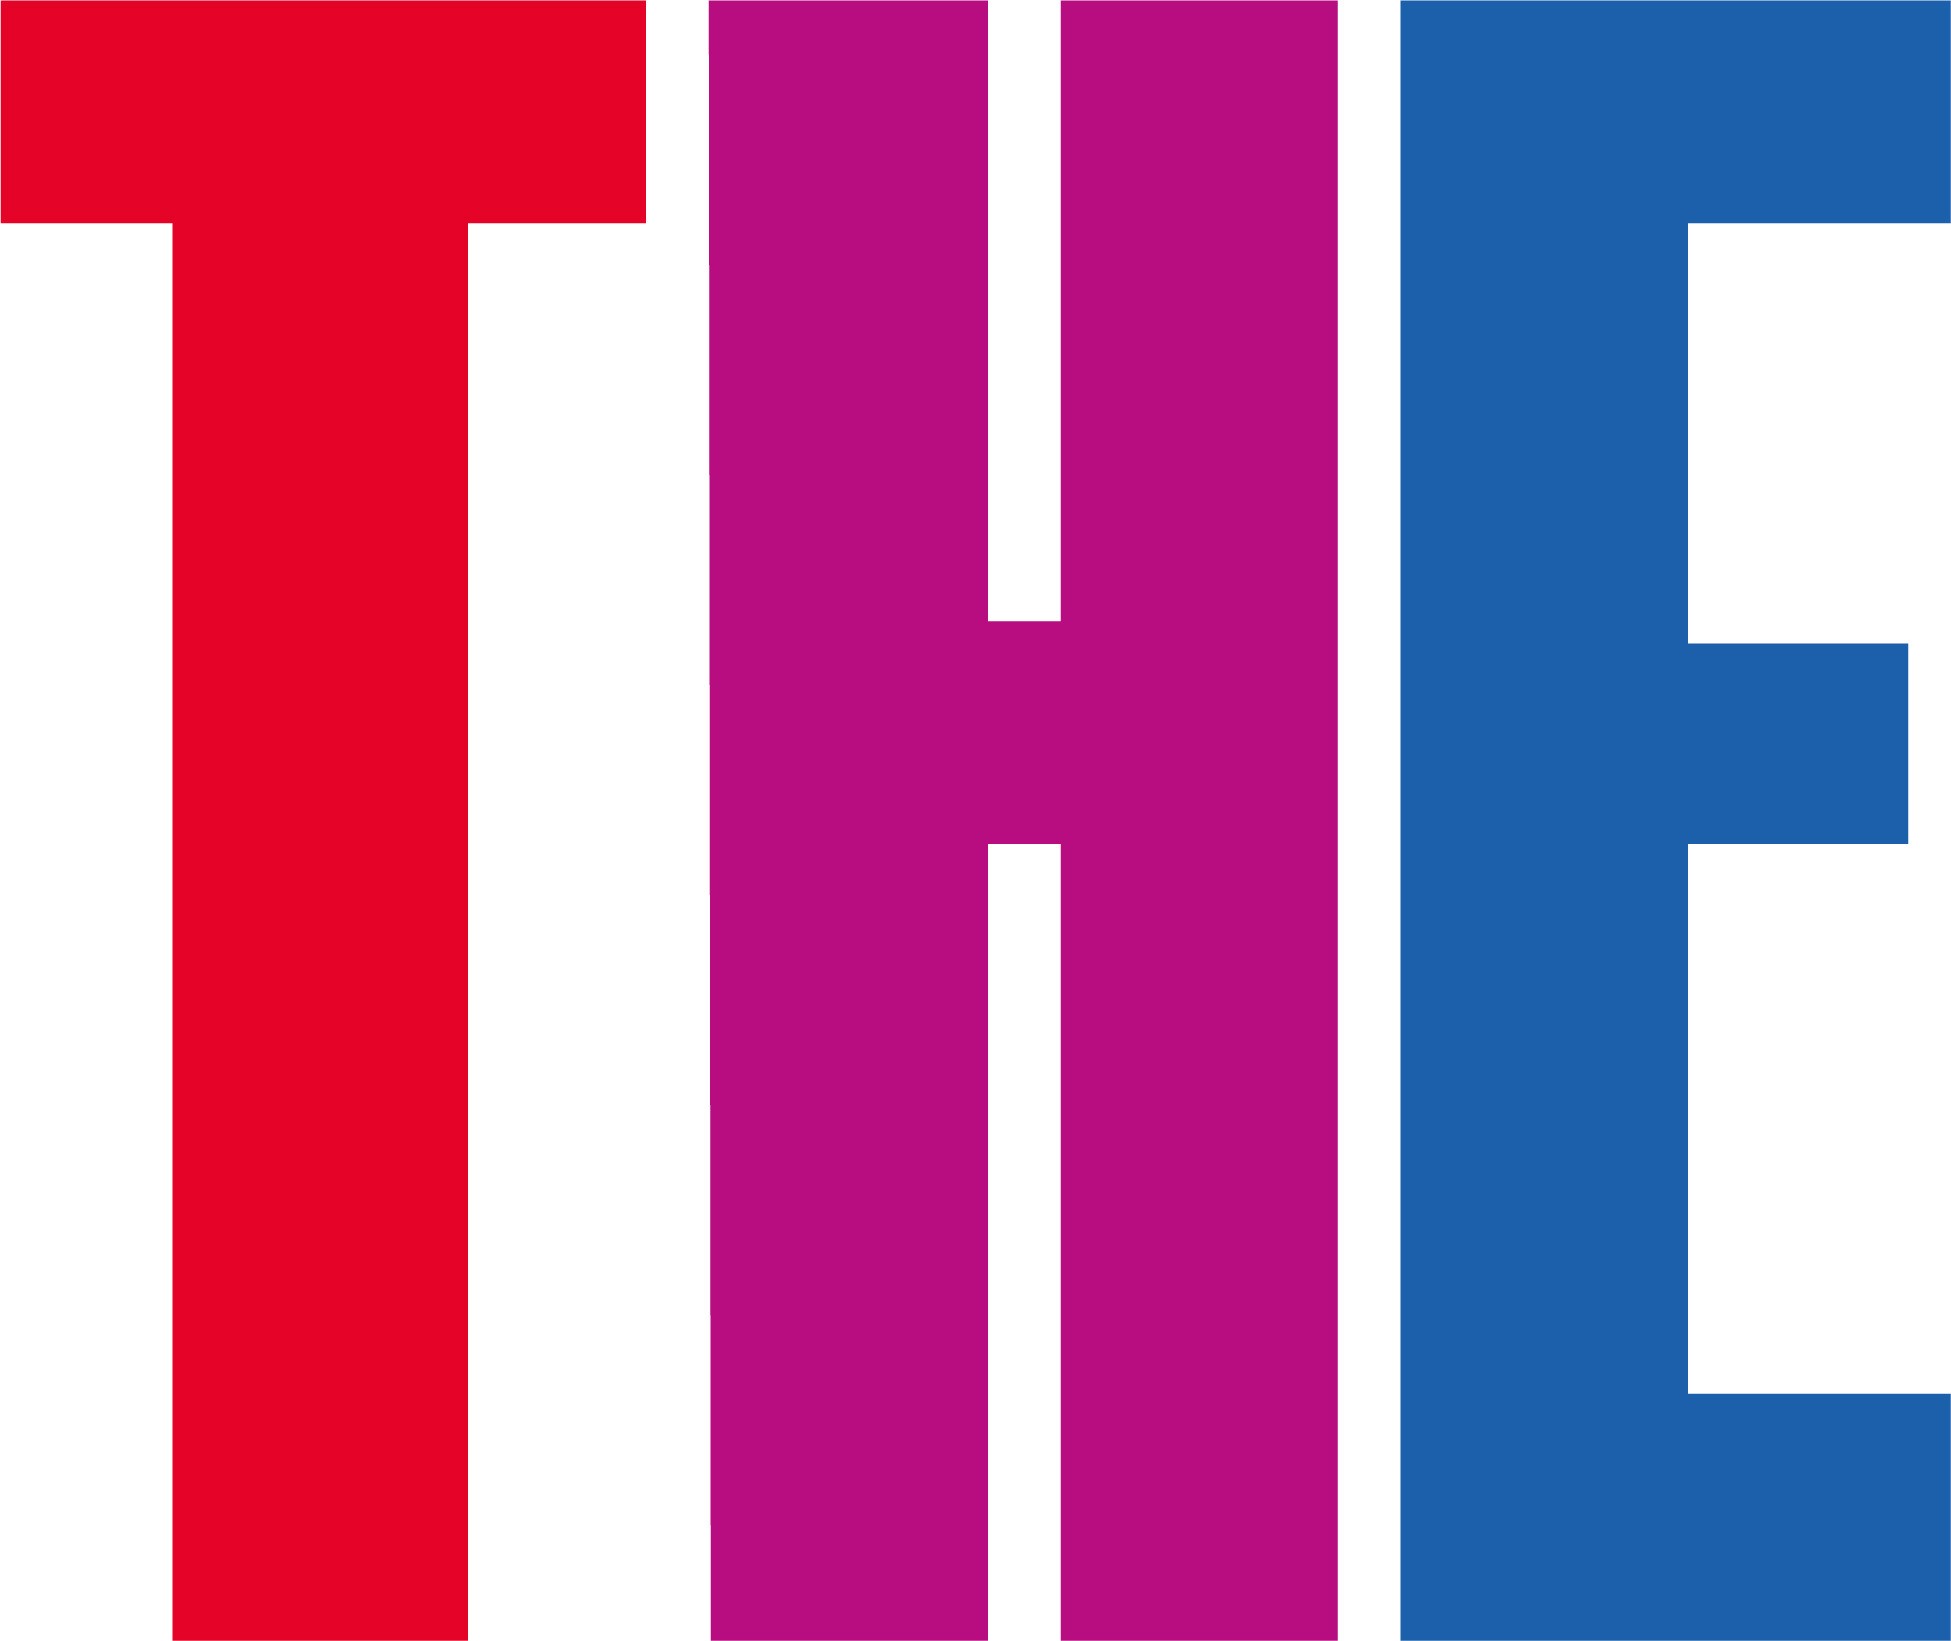 El logotipo de Times Higher Education, una T roja, una H morada y una E azul.